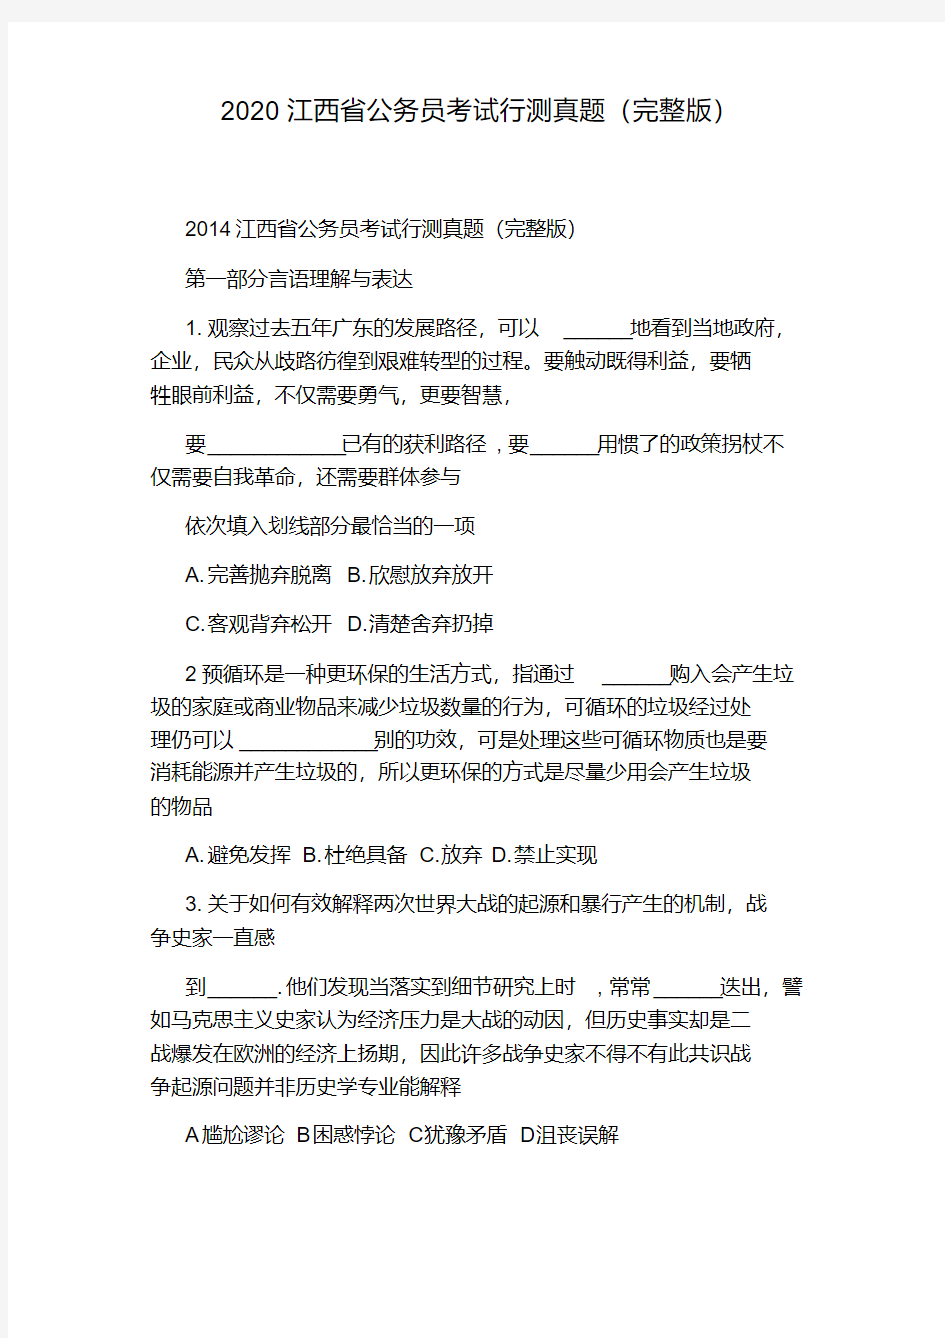 2020江西省公务员考试行测真题(完整版).pdf